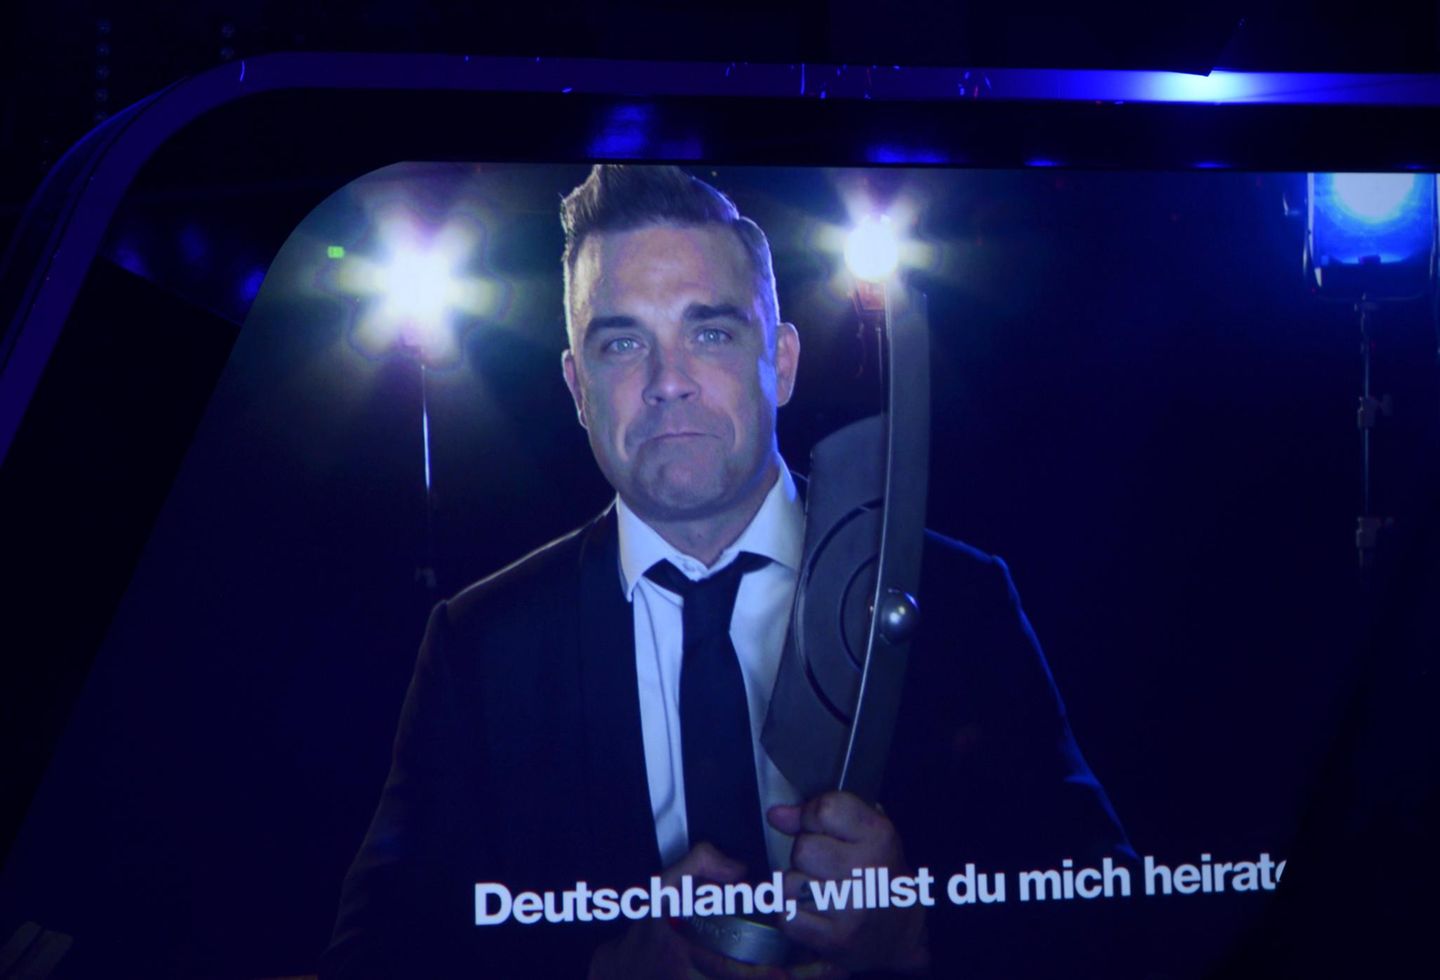 Robbie Williams kann zwar nicht vor Ort sein, liebt Deutschland aber trotzdem und will das Land sogar heiraten, sagt er zumindest.